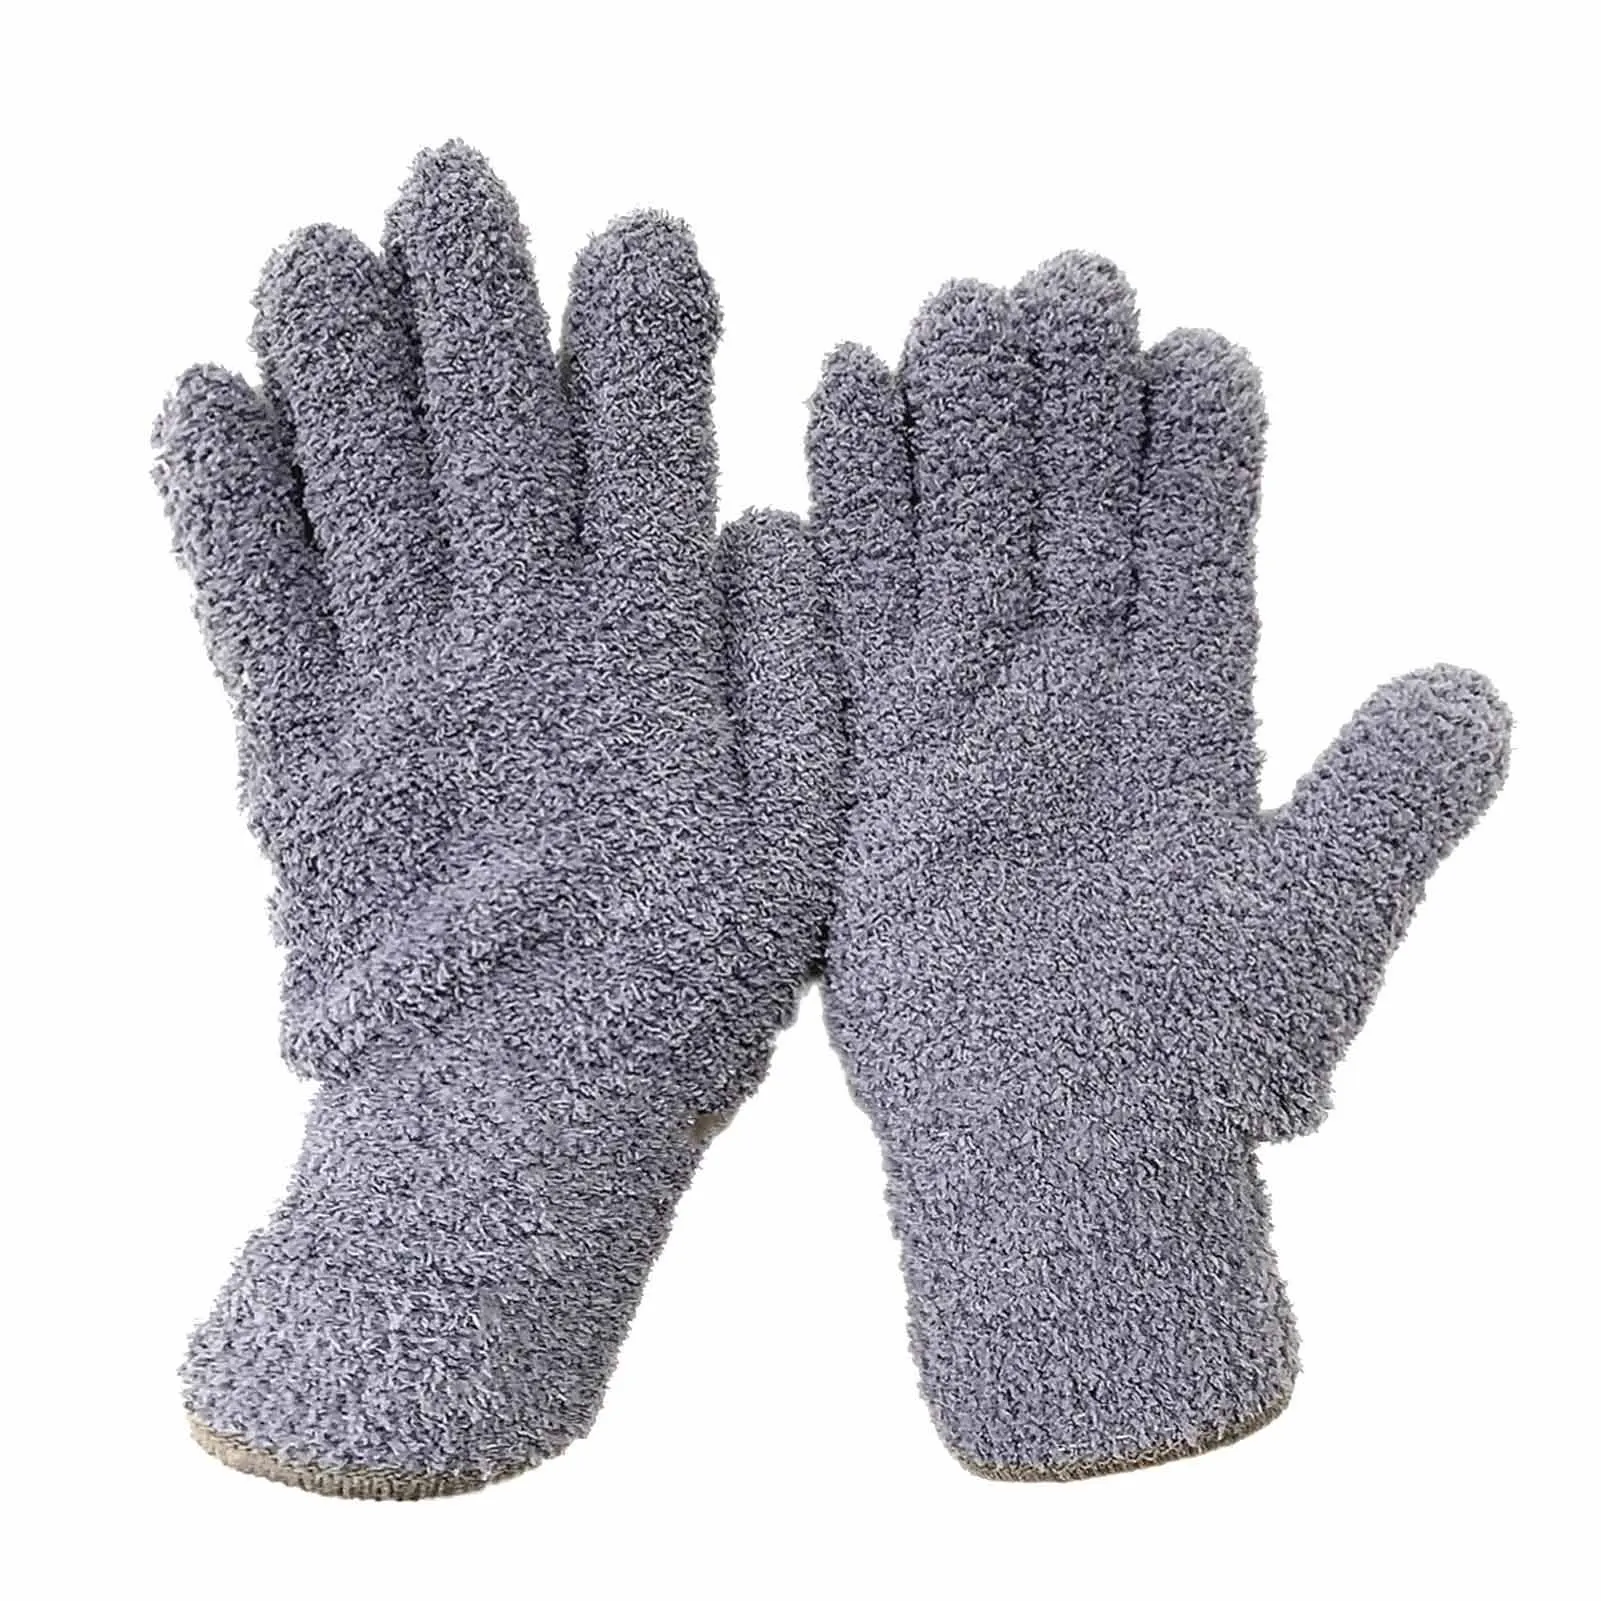 Geyoga 12 Pairs Microfiber Dusting Gloves Household Dusting